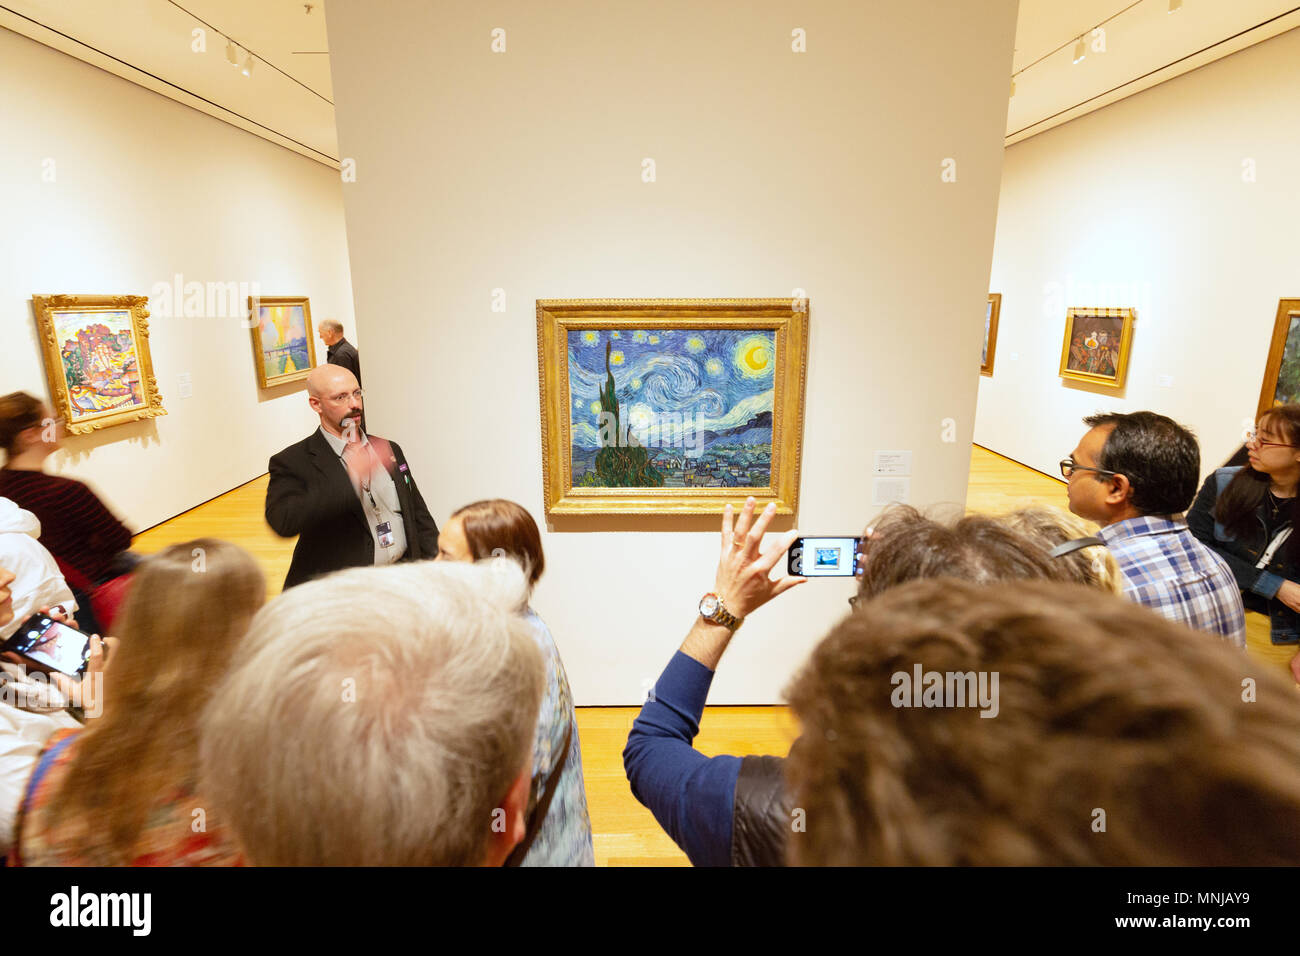 MoMA - Museum of Modern Art New York Innenraum - Menschen auf der Suche nach ' Öl Malerei der sternenklaren Nacht' von Vincent Van Gogh, MoMA, New York City, USA Stockfoto